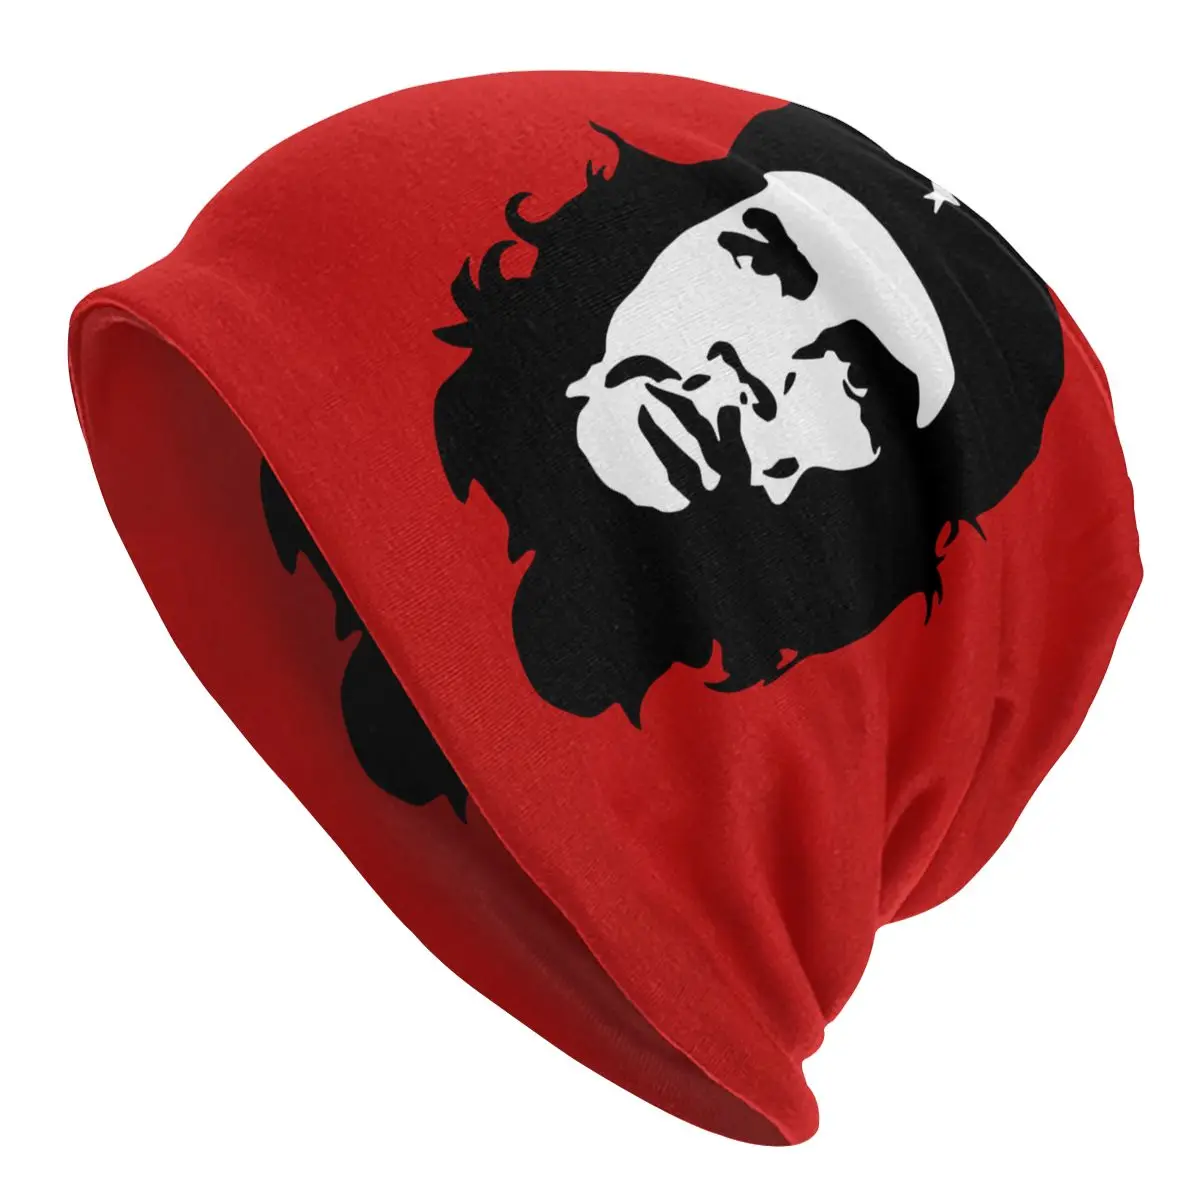 Che Guevara Motorhaube Hüte Cool Outdoor Skullies Mützen Revolution Kuba Kubanischen Hüte für Männer Frauen Stricken Hut Warme Dual-verwenden Unisex Kappe